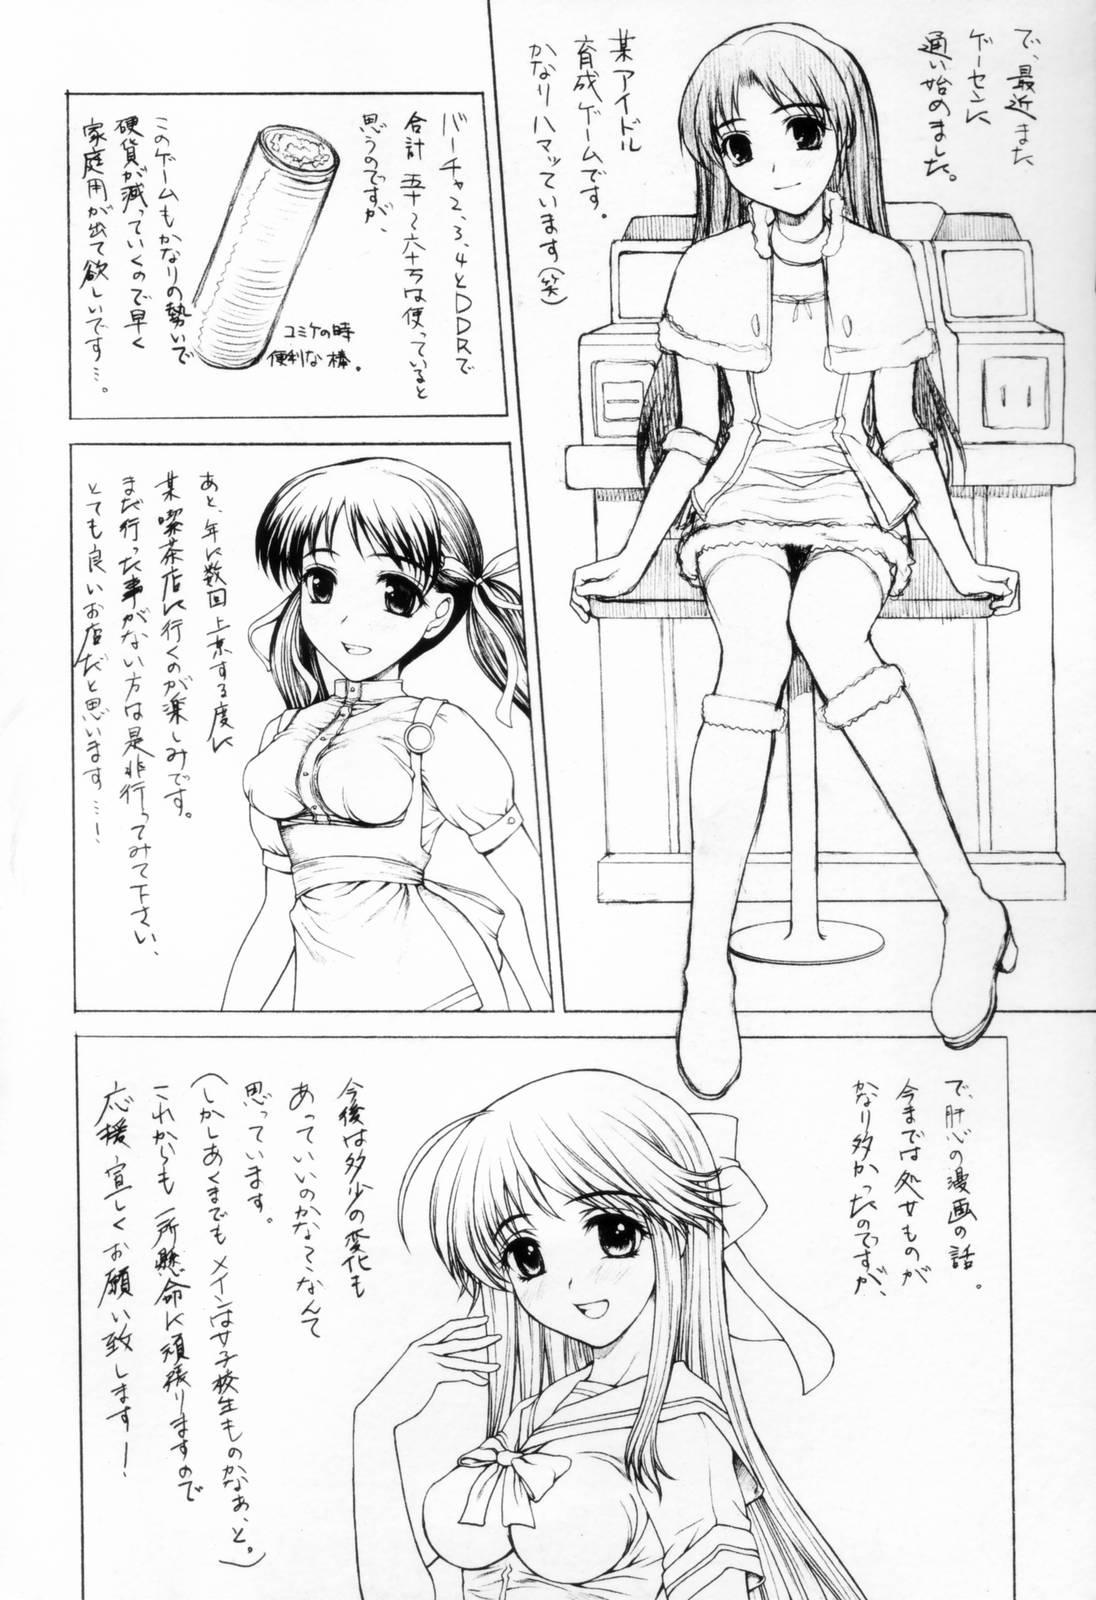 Chakui Seikou Page 178 Of 180 hentai haven, Chakui Seikou Page 178 Of 180 u...